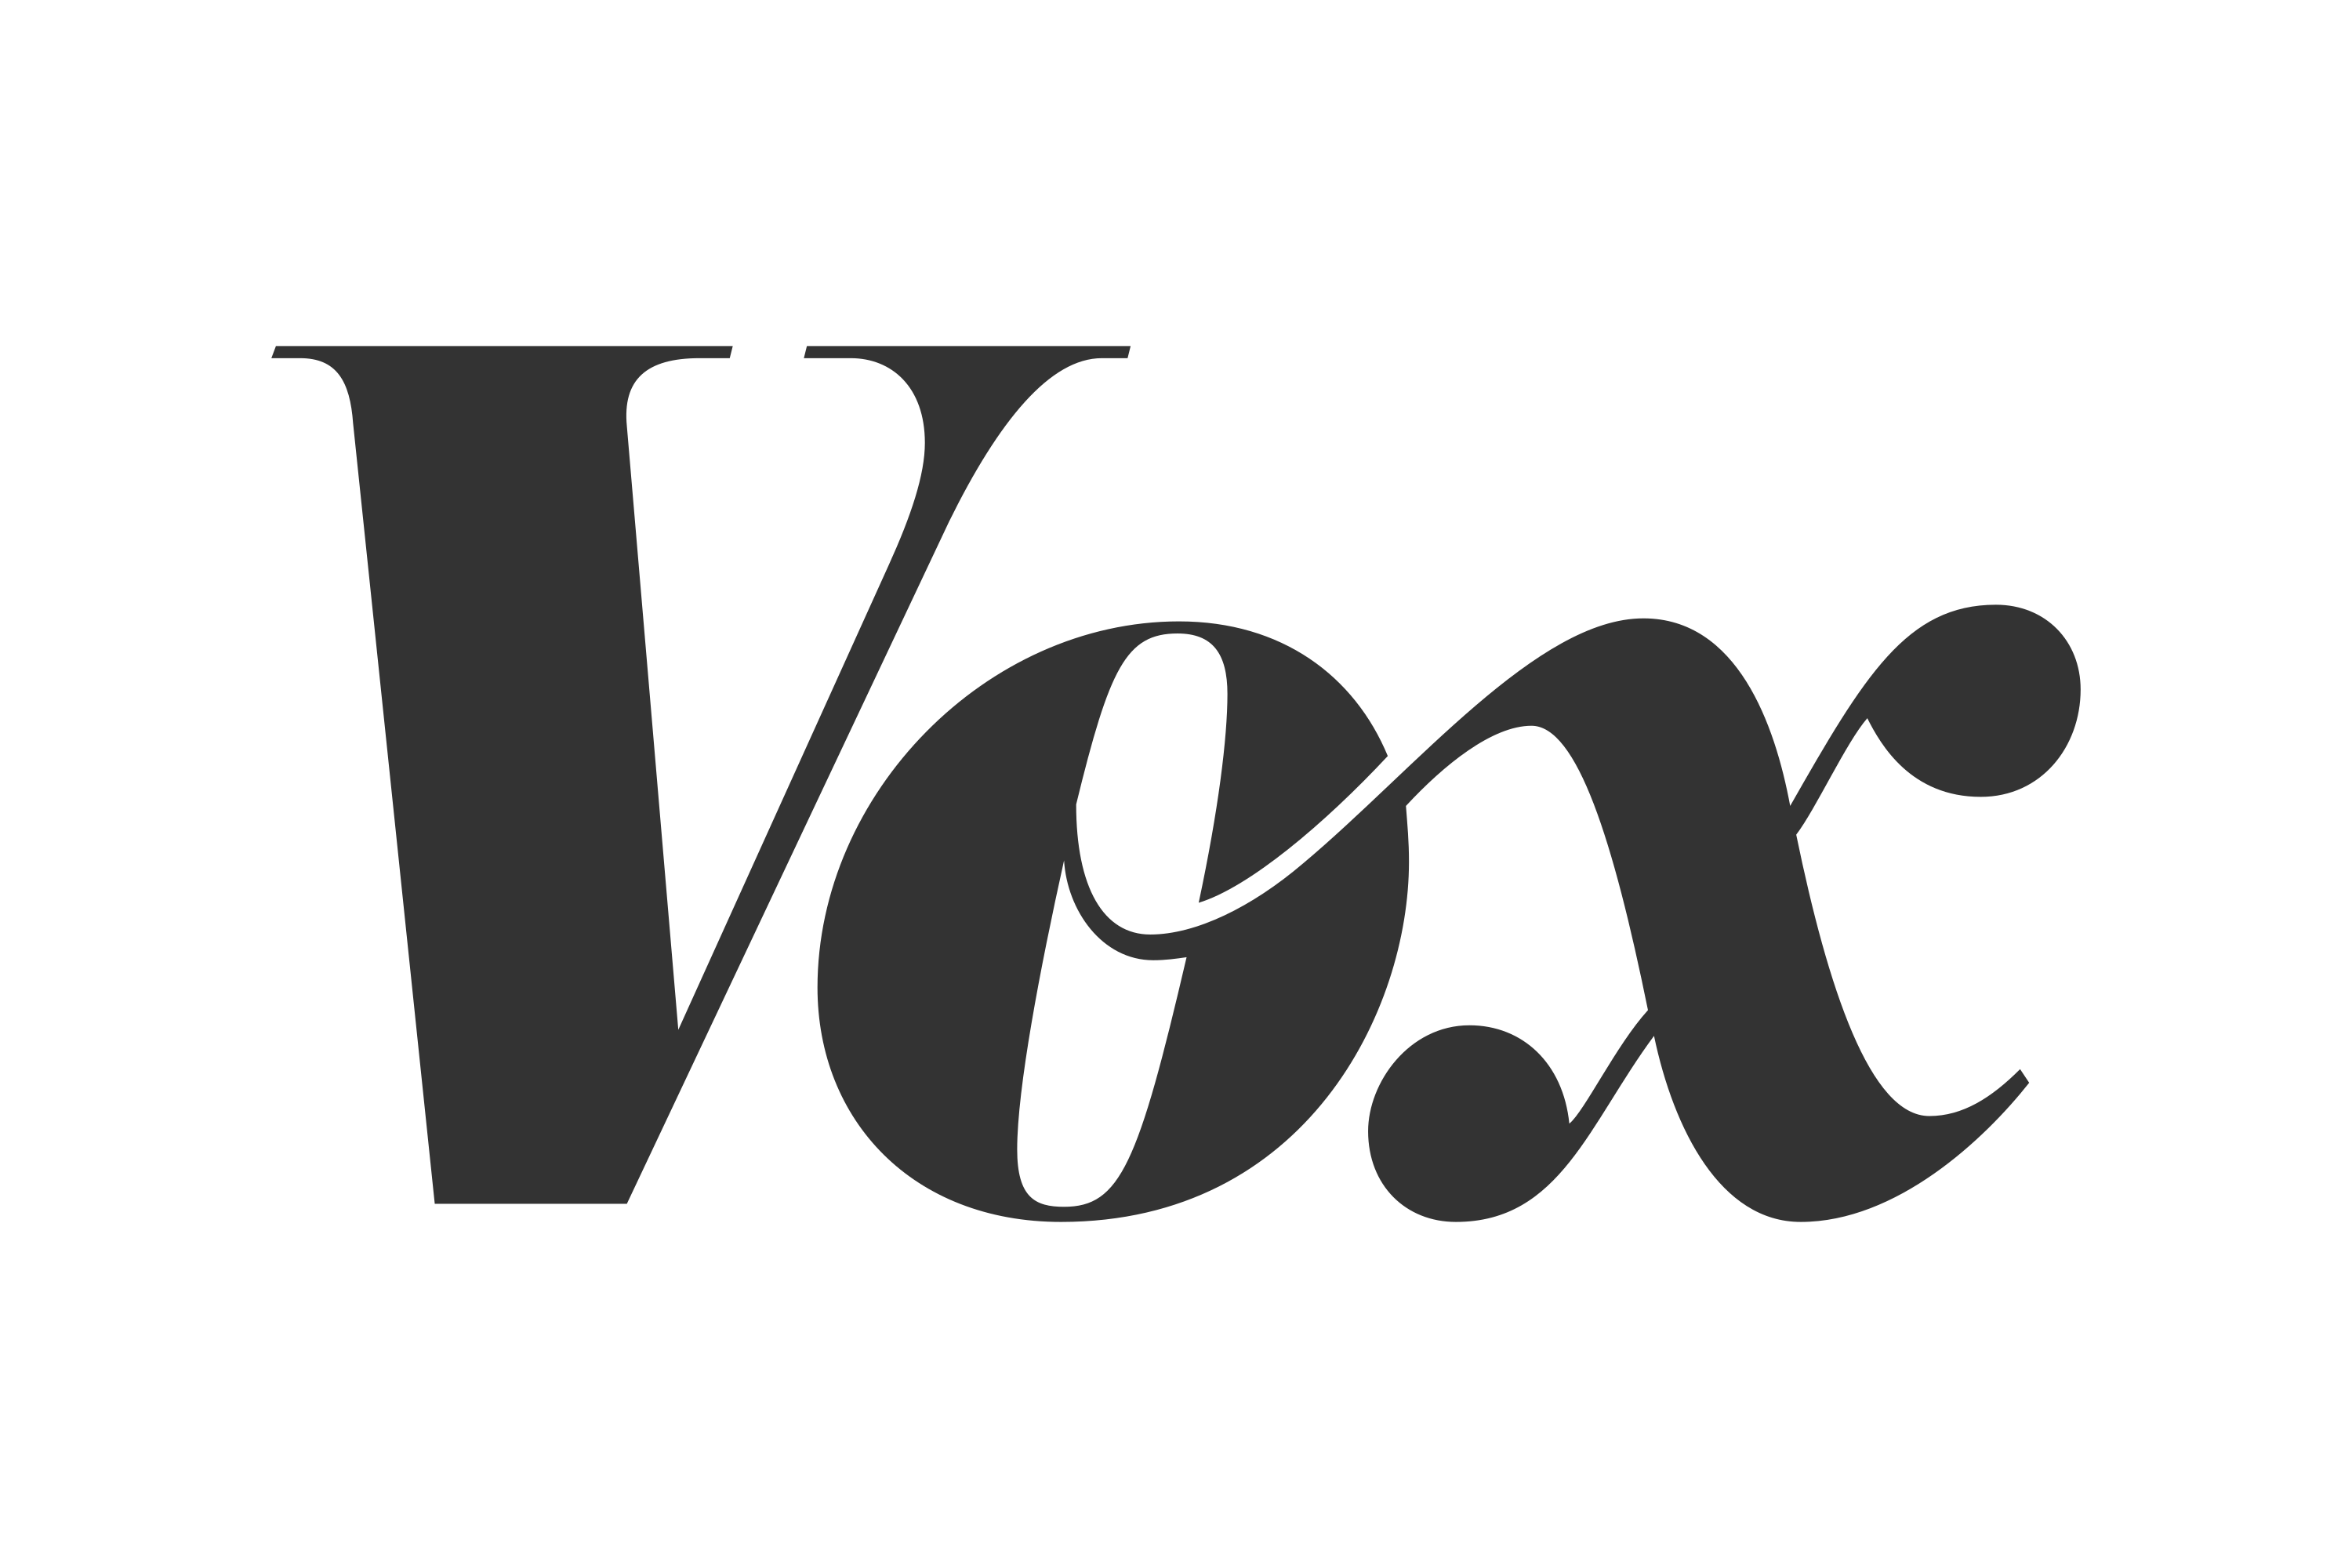 Download Vox Logo in SVG Vector or PNG File Format - Logo.wine